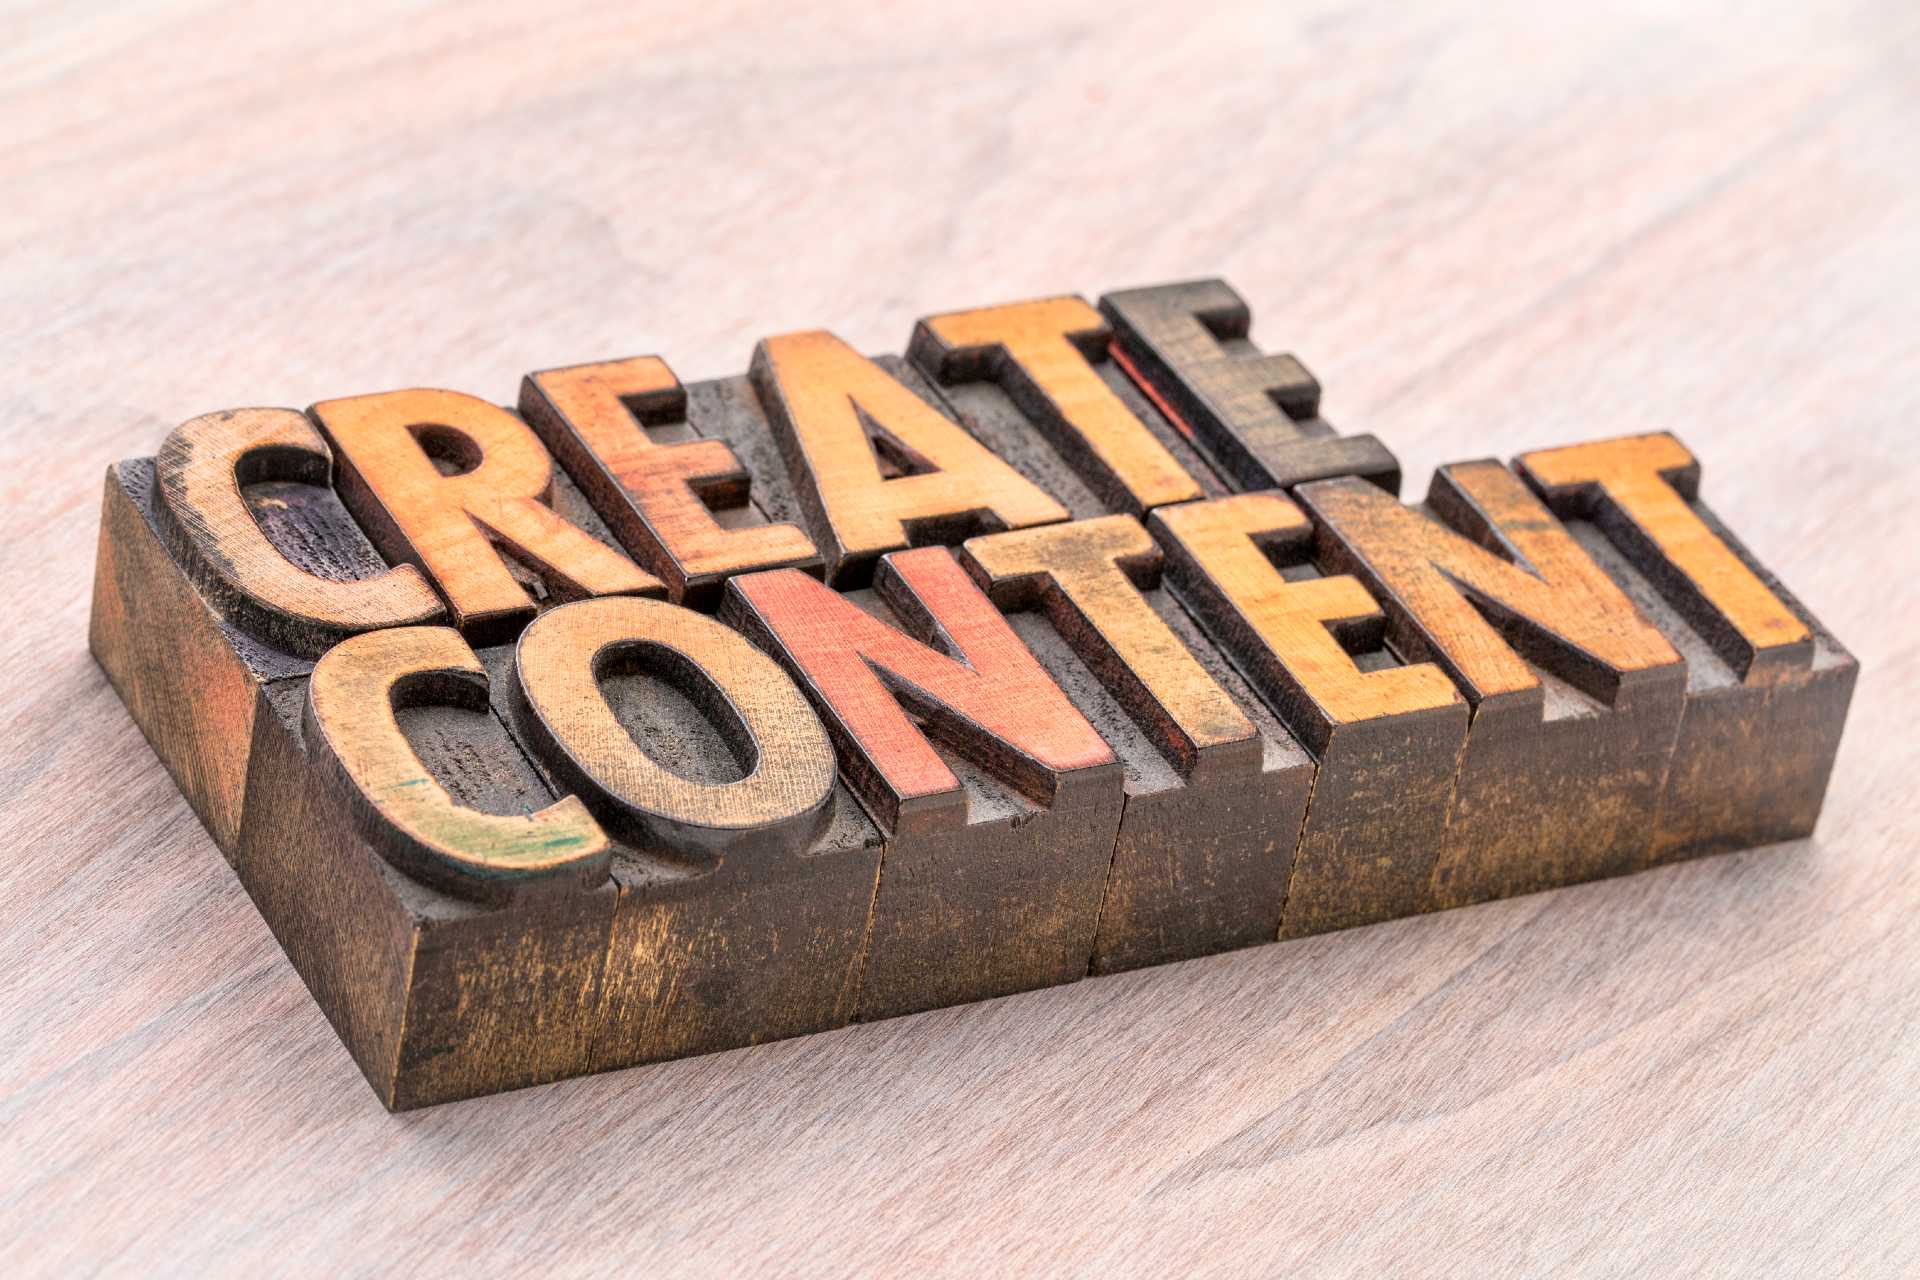 Create content